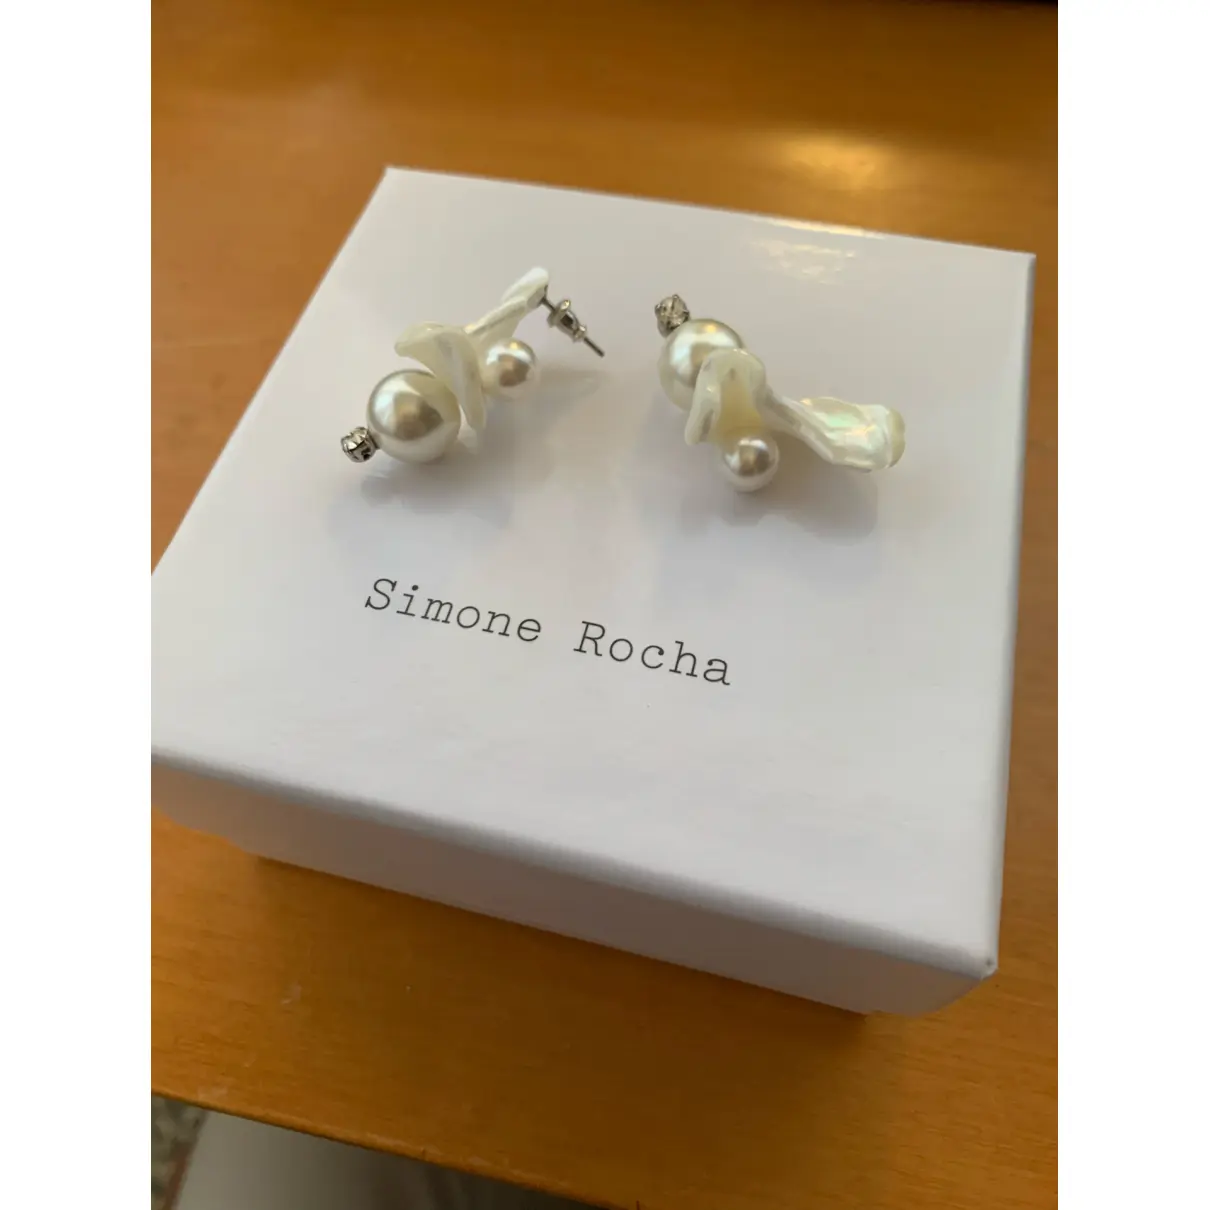 Buy Simone Rocha Pearls earrings online